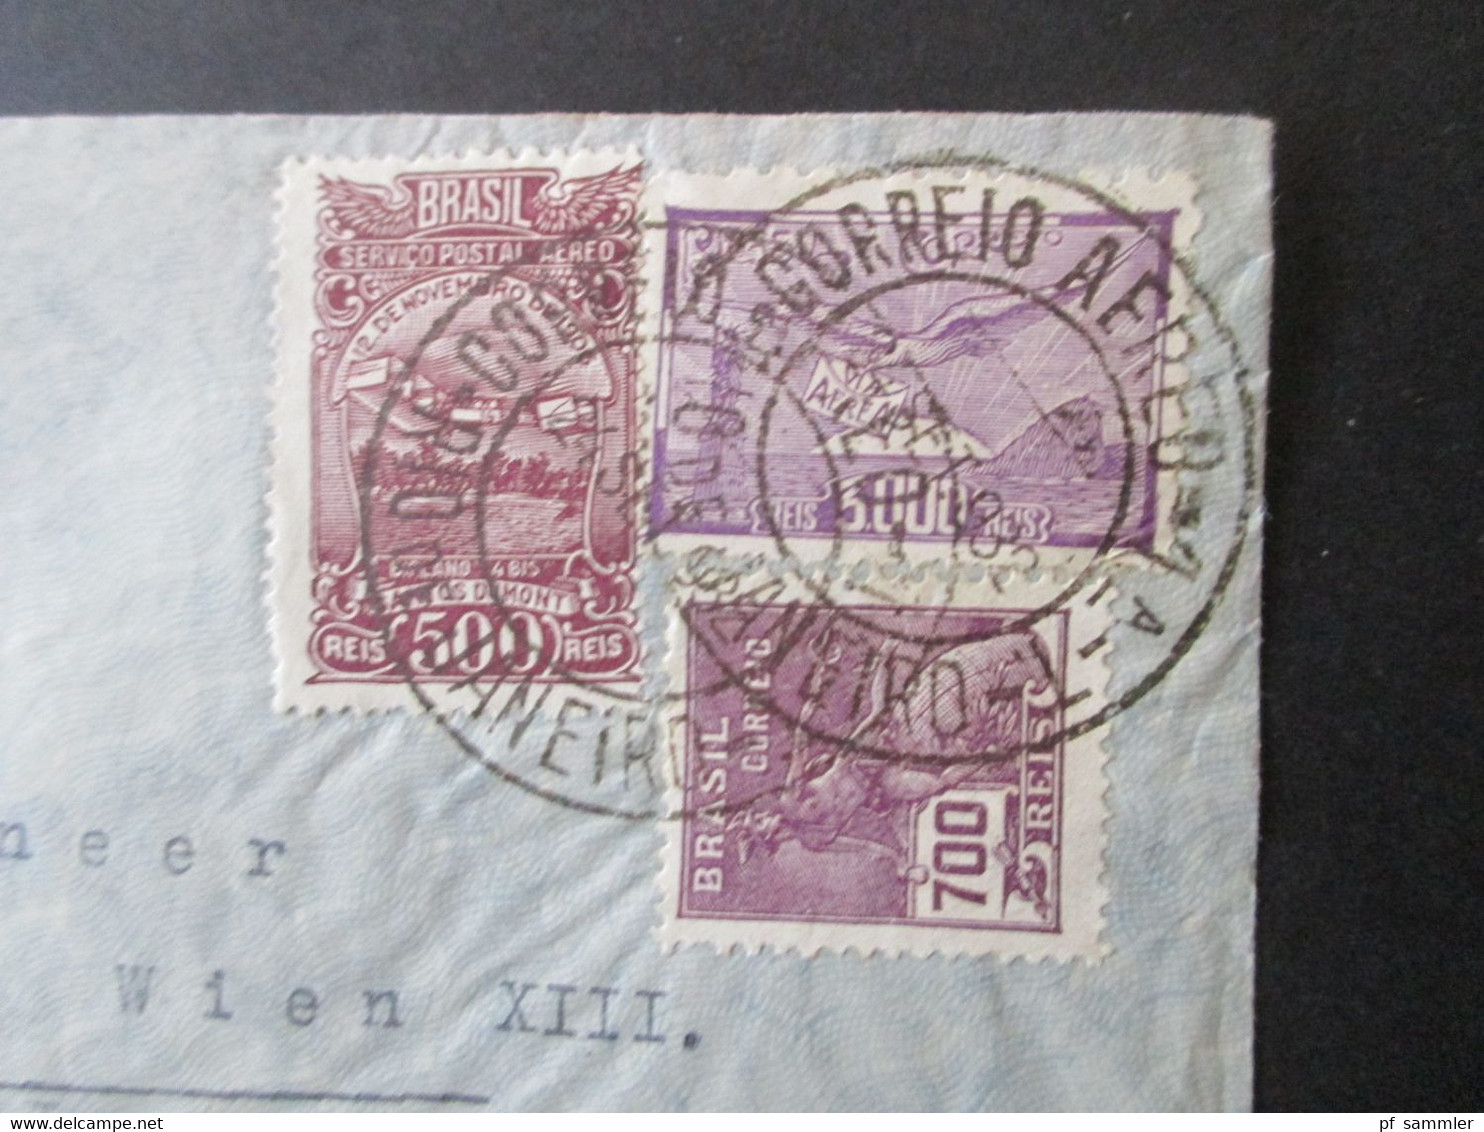 Brasilien 1932 Luftpostbeleg Violetter Stempel Via Aeropostale Mit Flugpostmarke Nr. 337 Nach Wien Gesendet - Cartas & Documentos